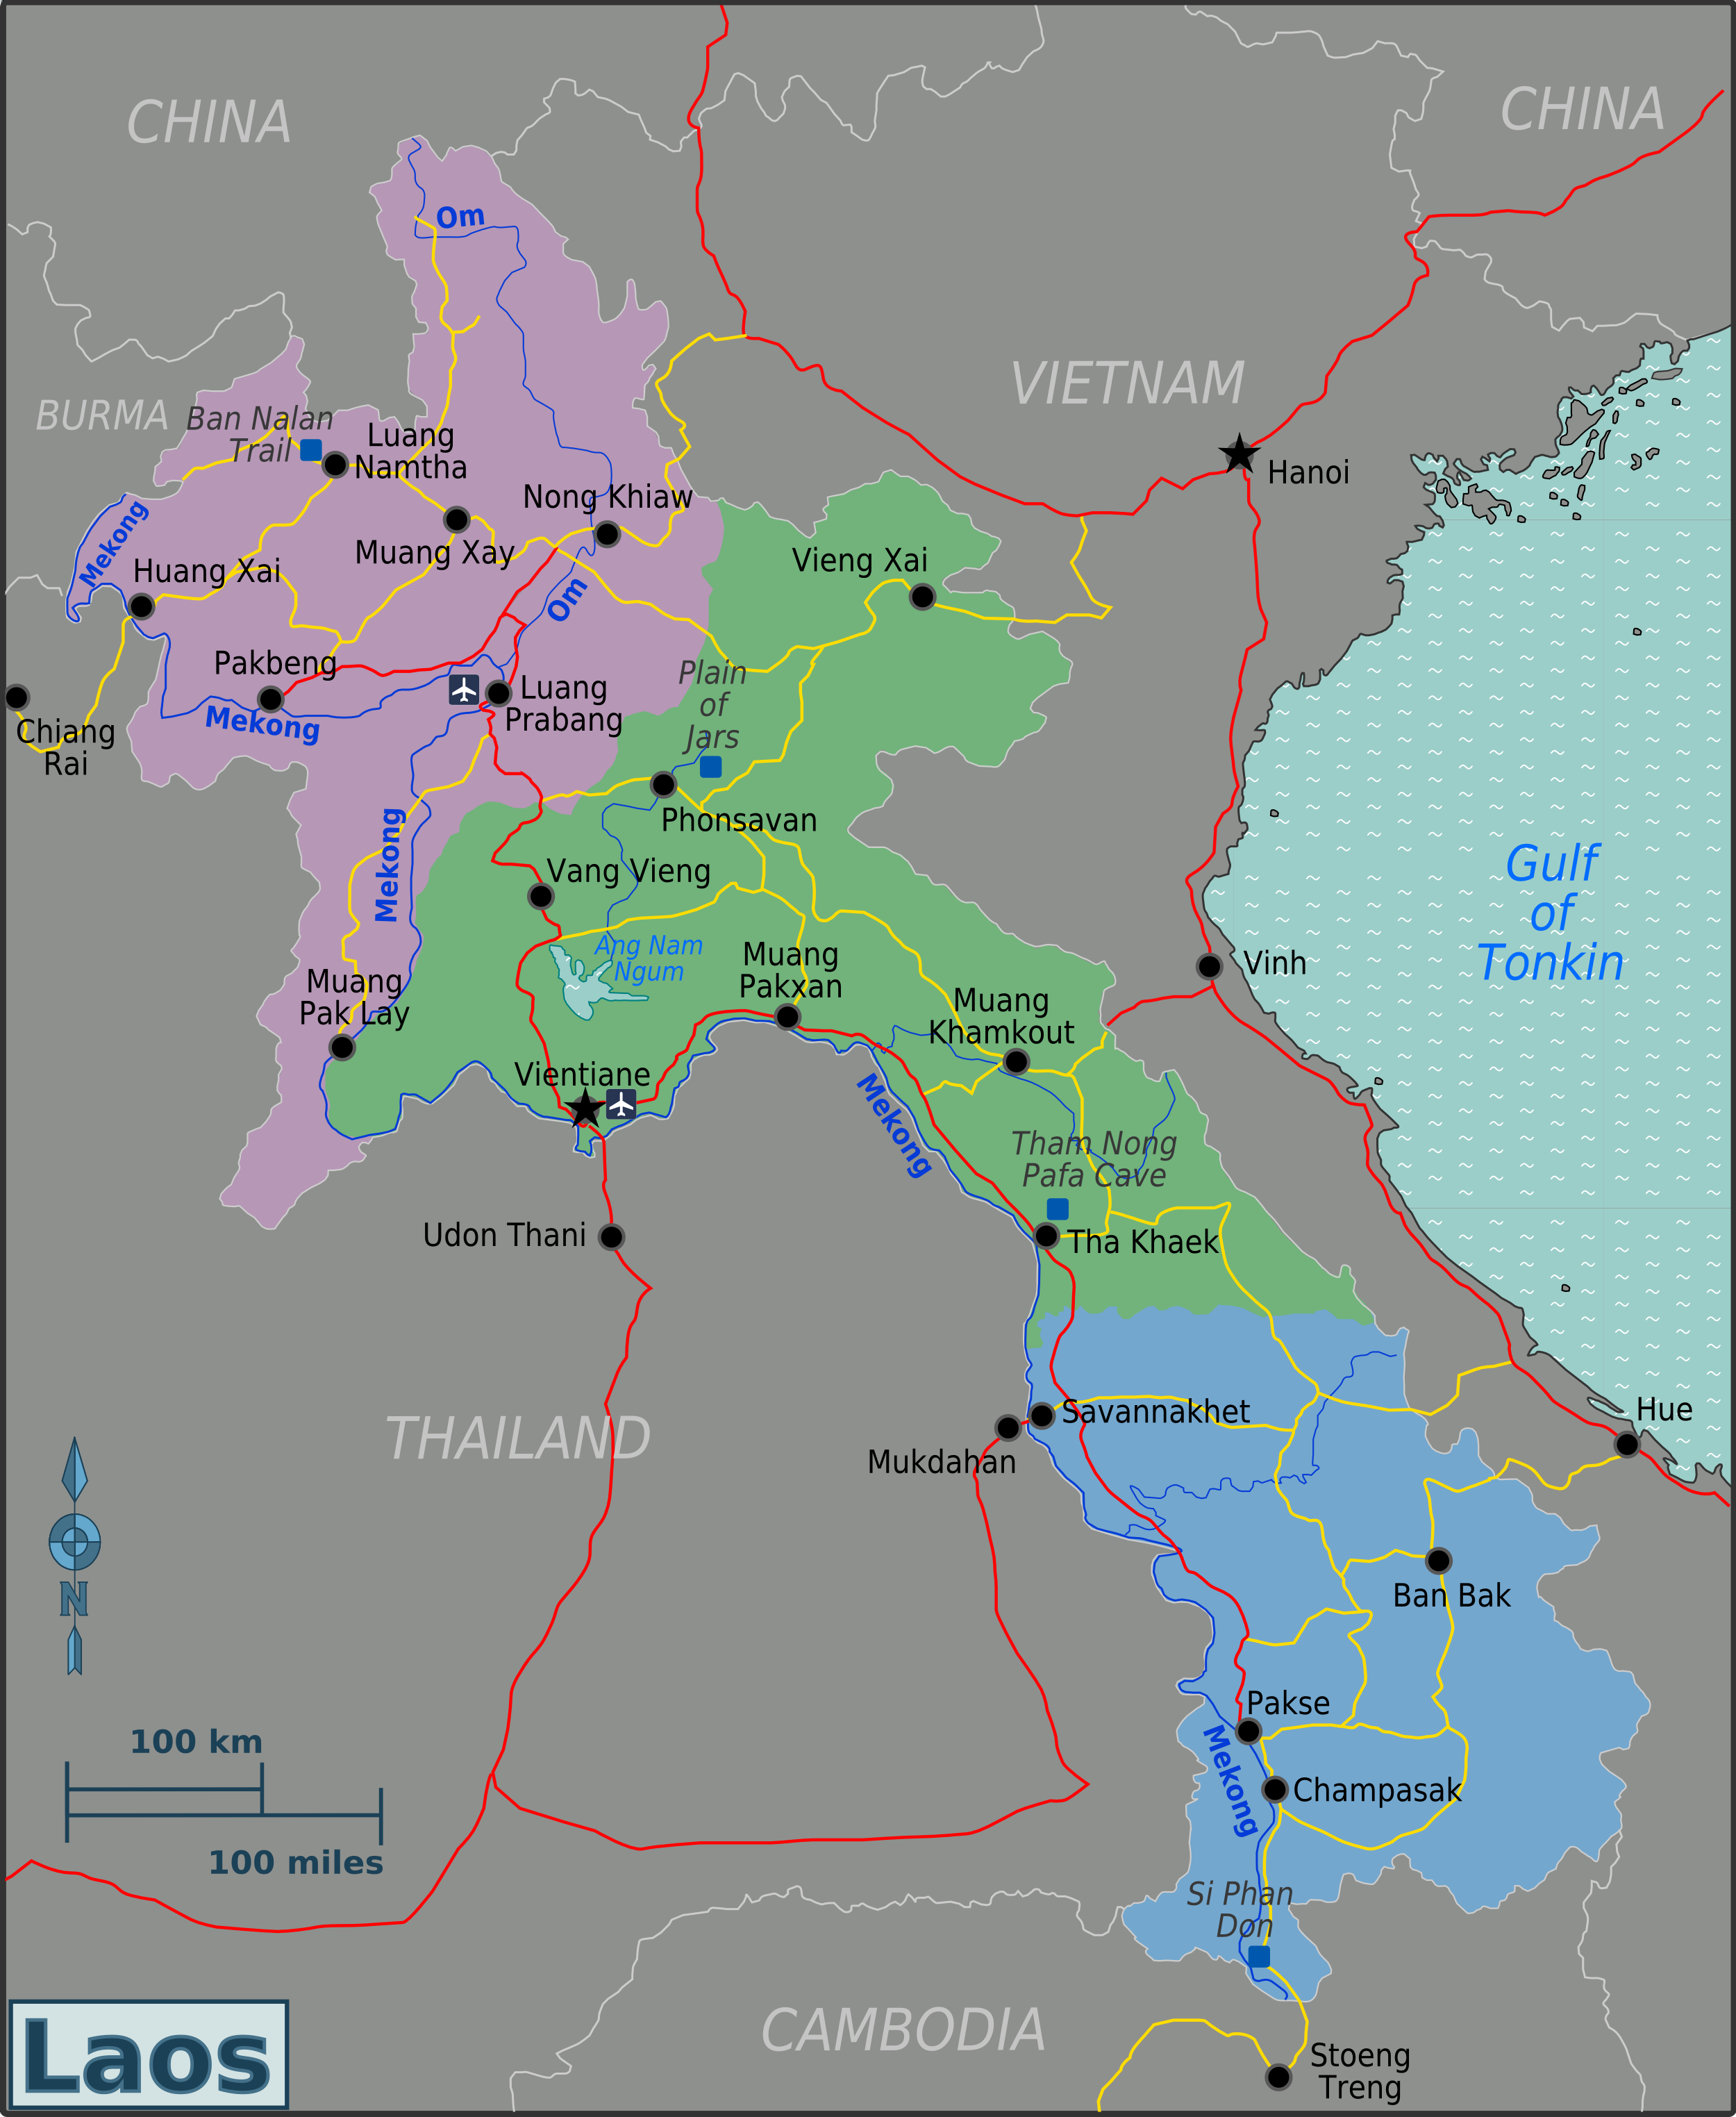 Laos_Regions_Map.png